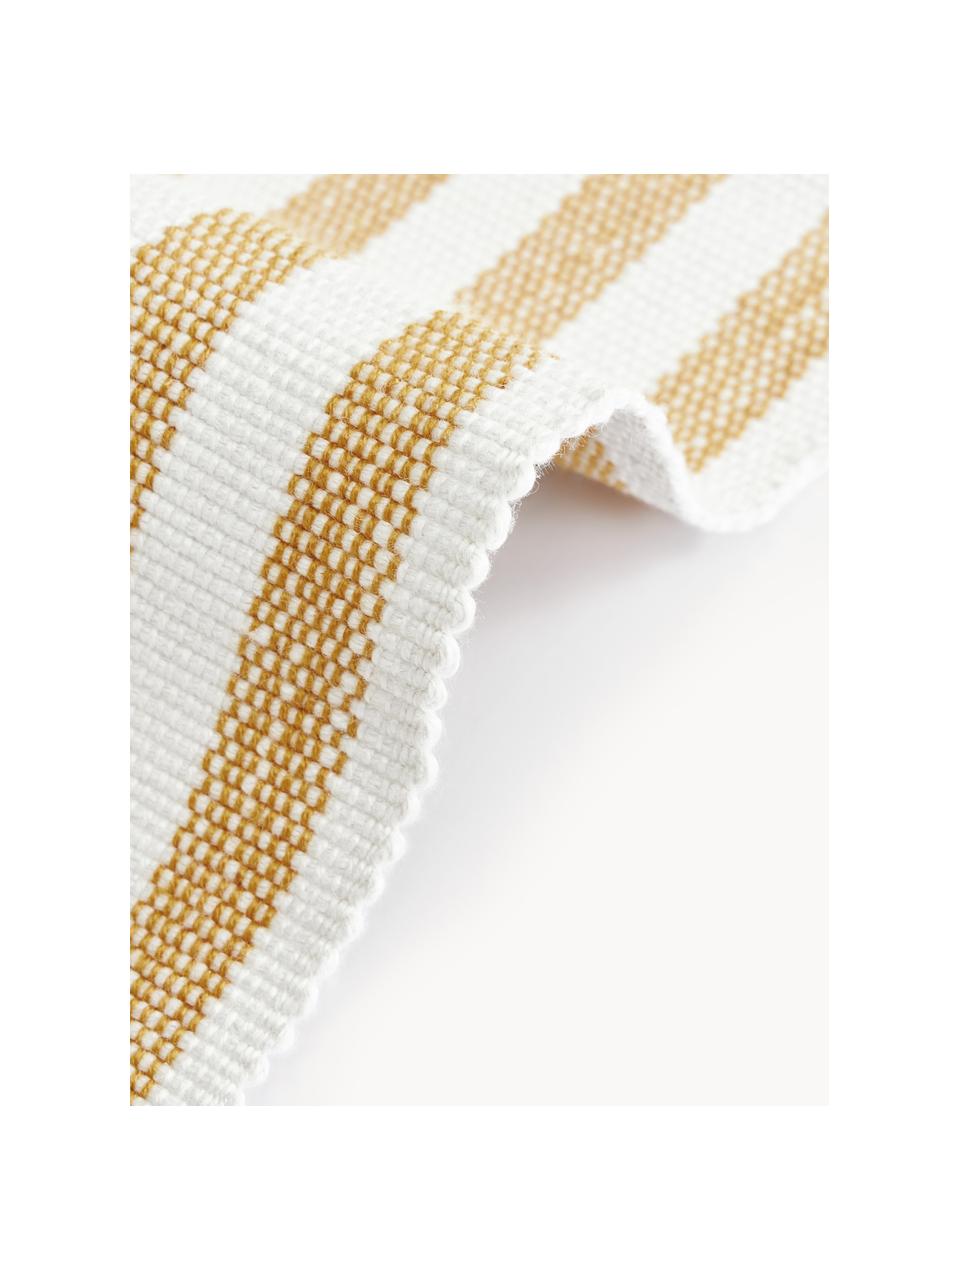 Ręcznie tkany dywan wewnętrzny/zewnętrzny Lyla, 100% poliester z certyfikatem GRS, Biały, ochrowy, S 80 x D 150 cm (Rozmiar XS)